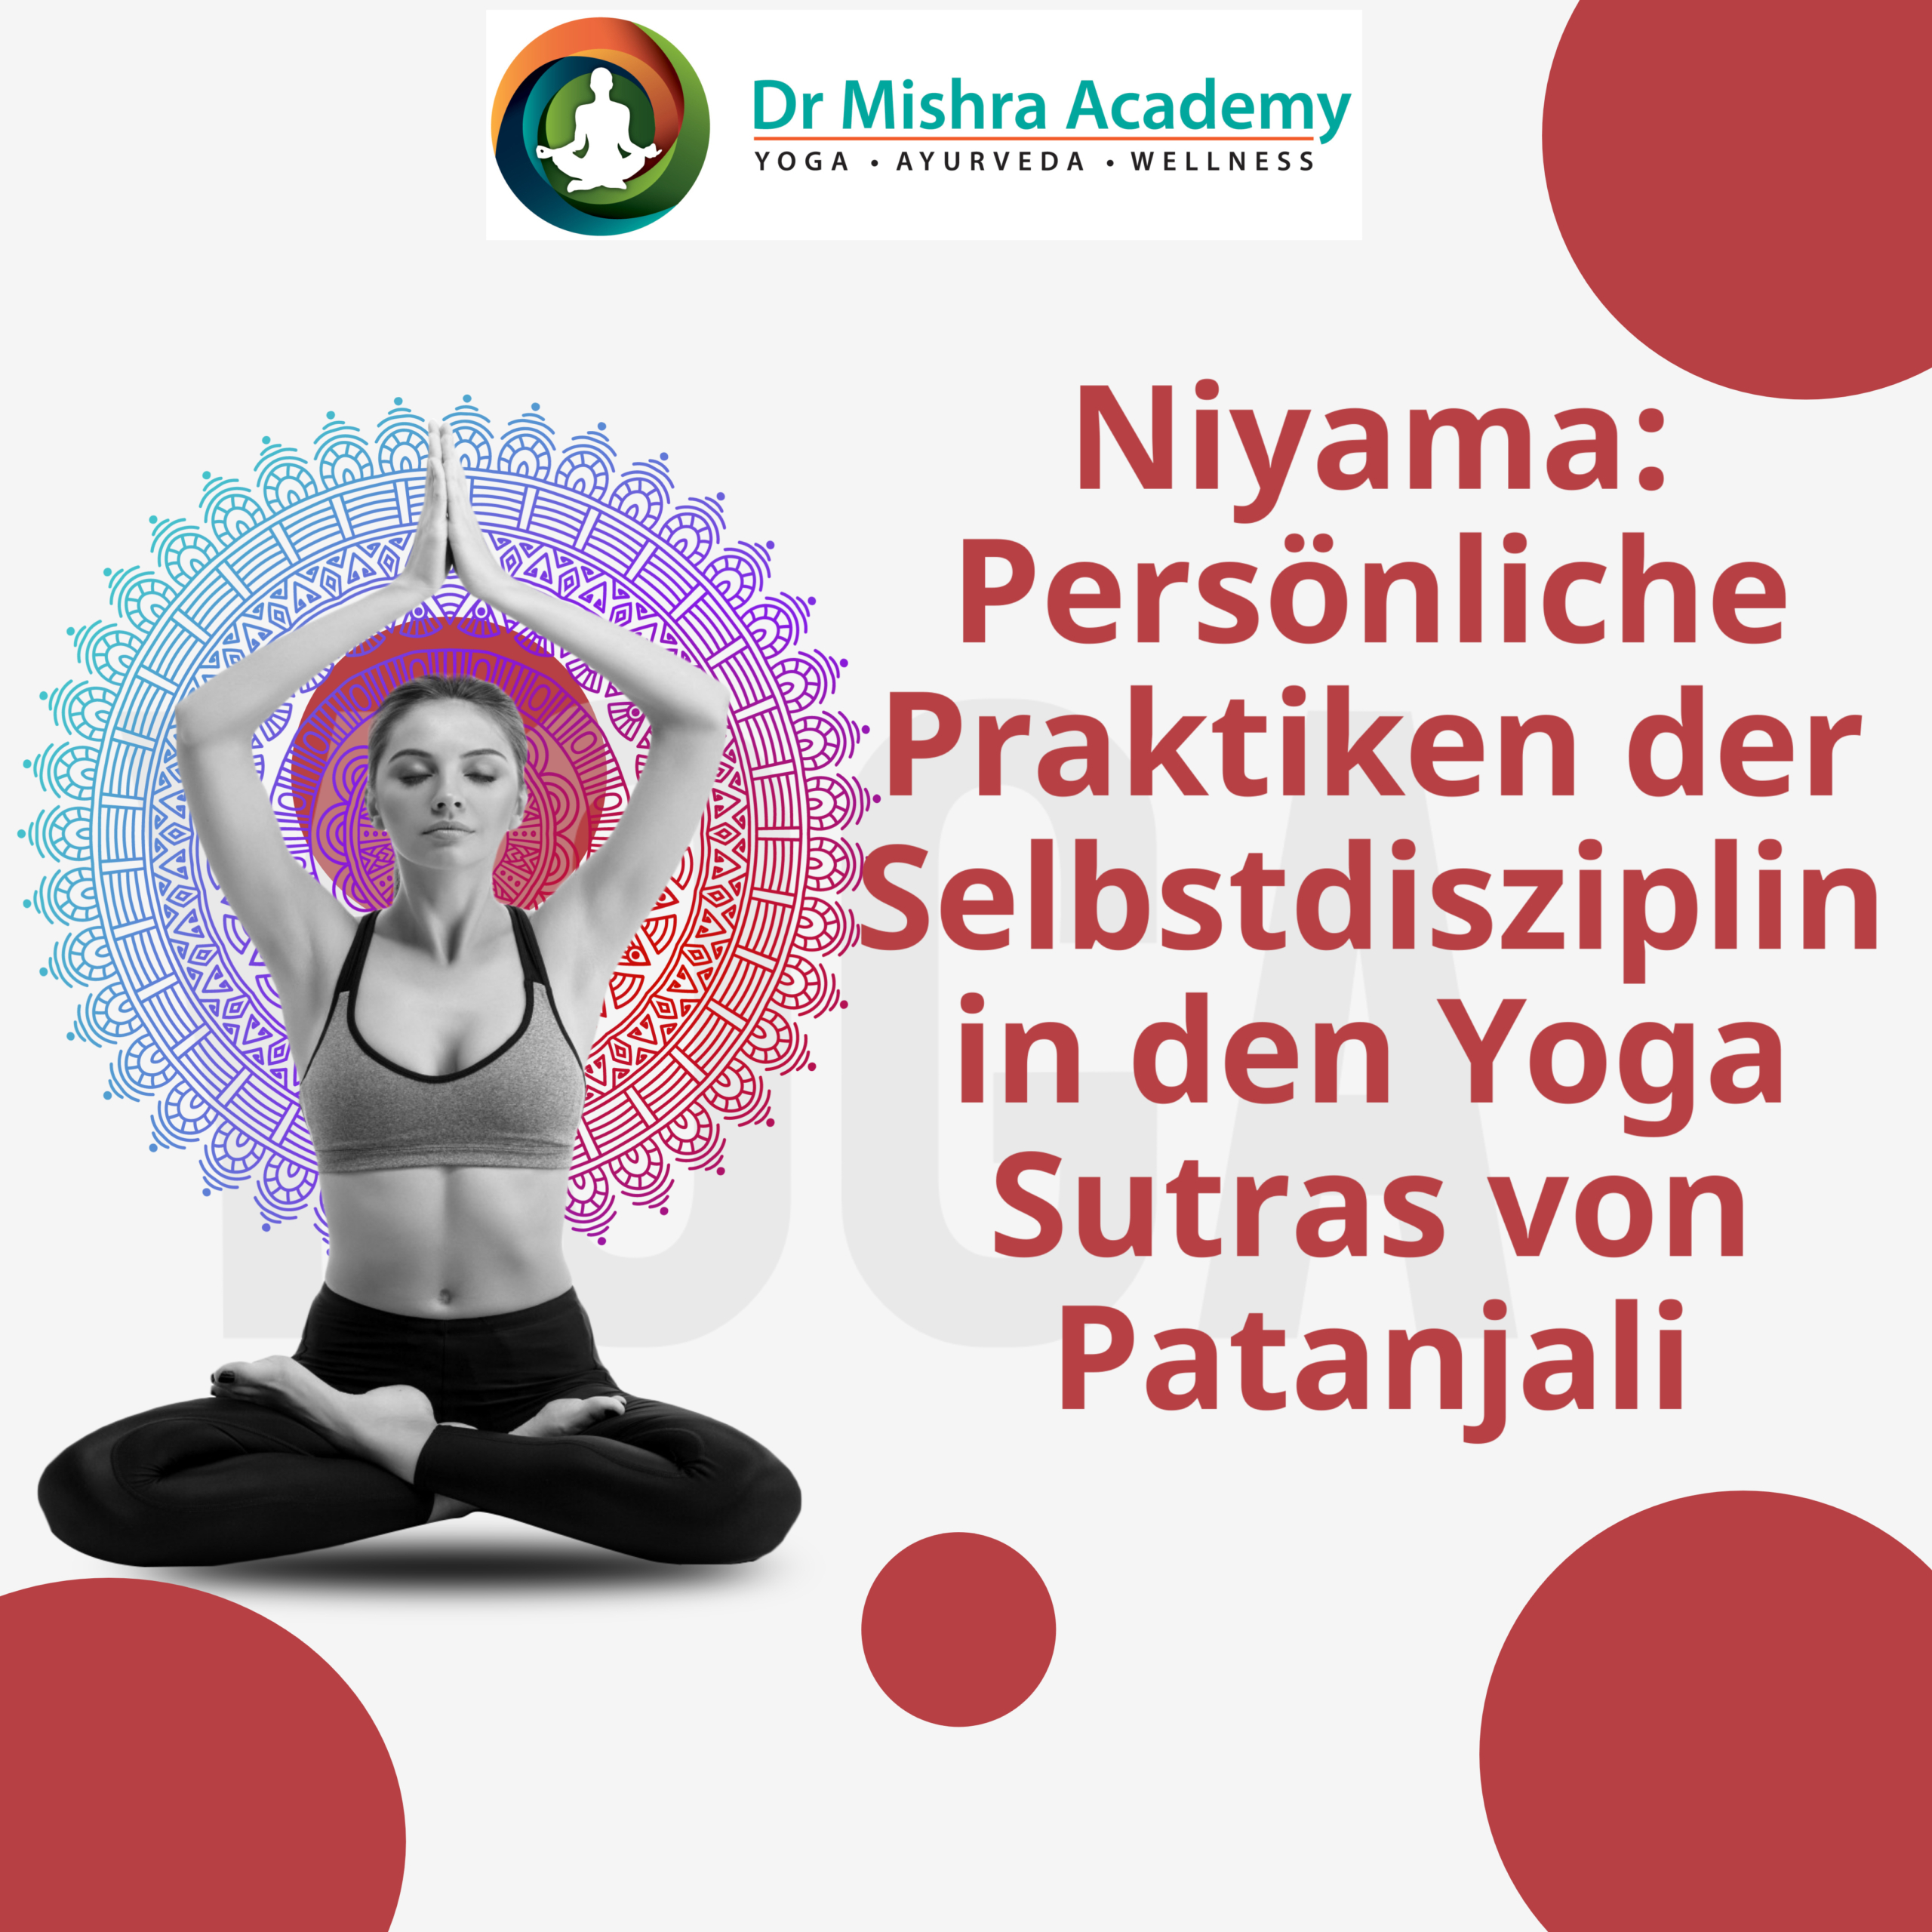 Niyama: Persönliche Praktiken der Selbstdisziplin in den Yoga Sutras von Patanjali